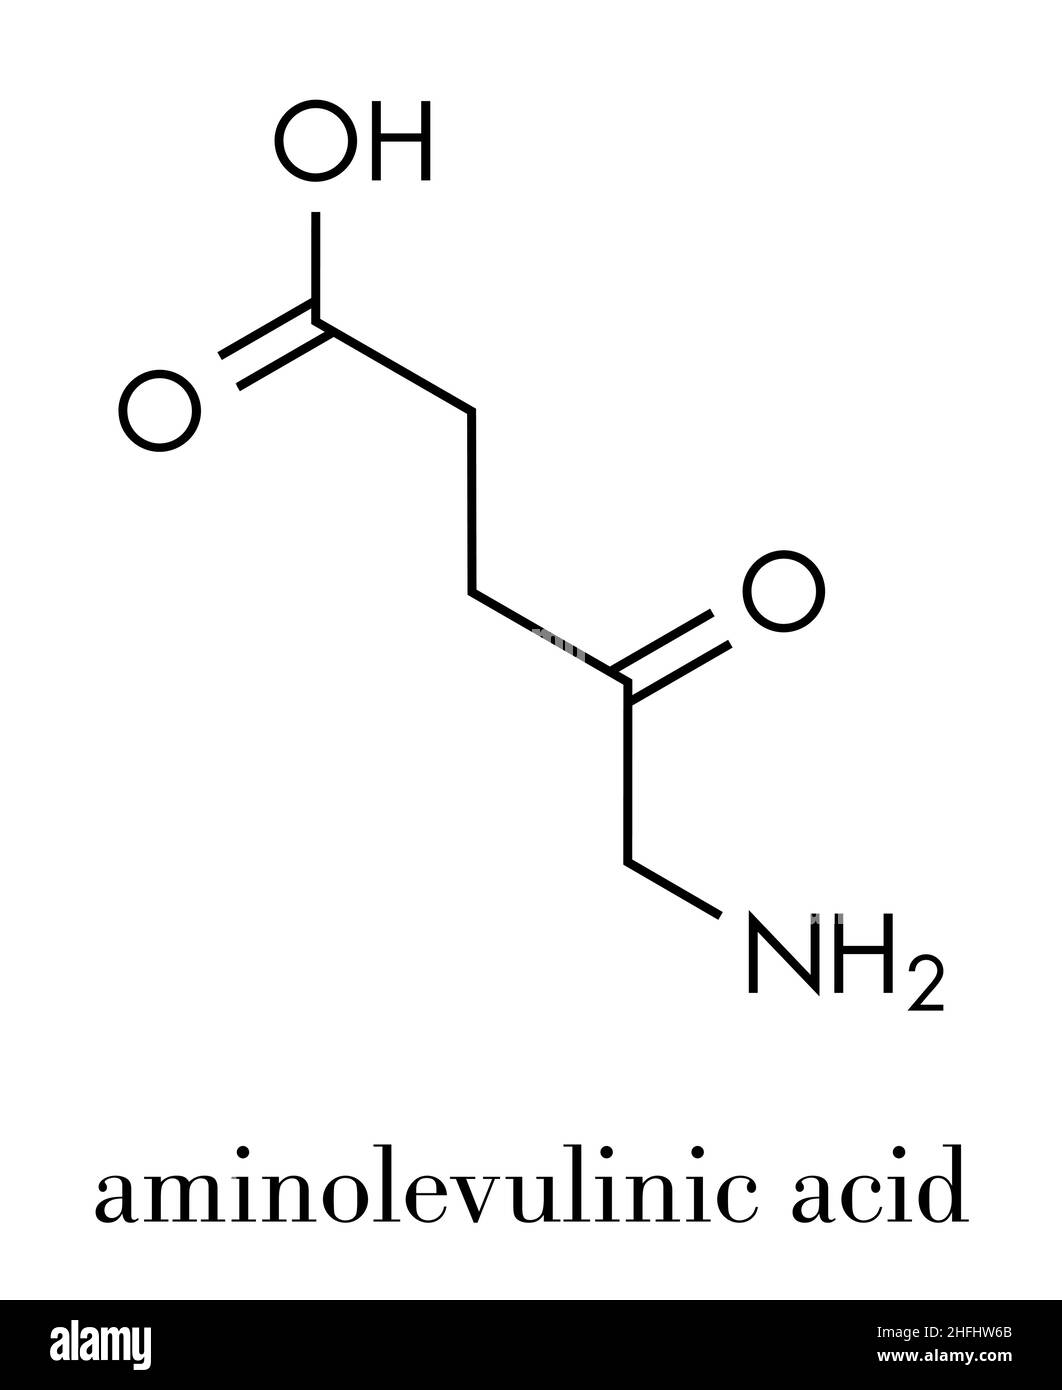 d-Aminolevulinsäure (ALA)-Medikamentenmolekül. Wird bei der Diagnose und Behandlung (photodynamische Therapie) von Krebs eingesetzt. Skelettformel. Stock Vektor